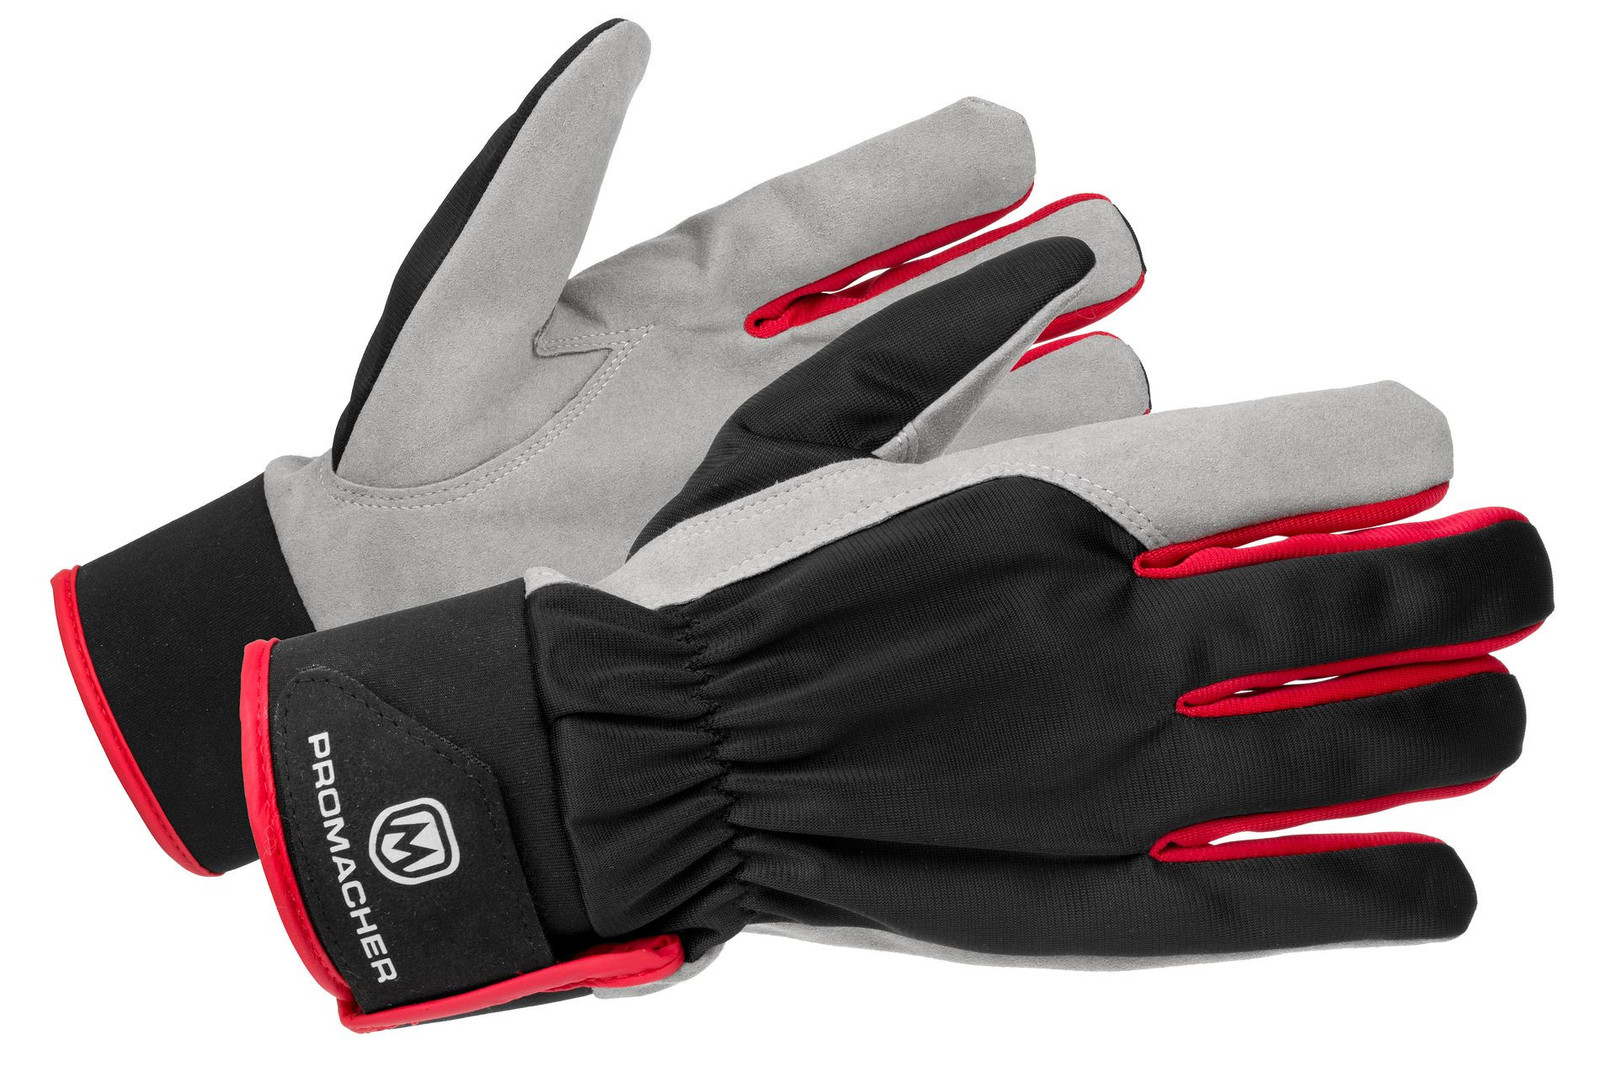 Pracovné rukavice Promacher Carpos Velcro kombinované - veľkosť: 7/S, farba: sivá/červená